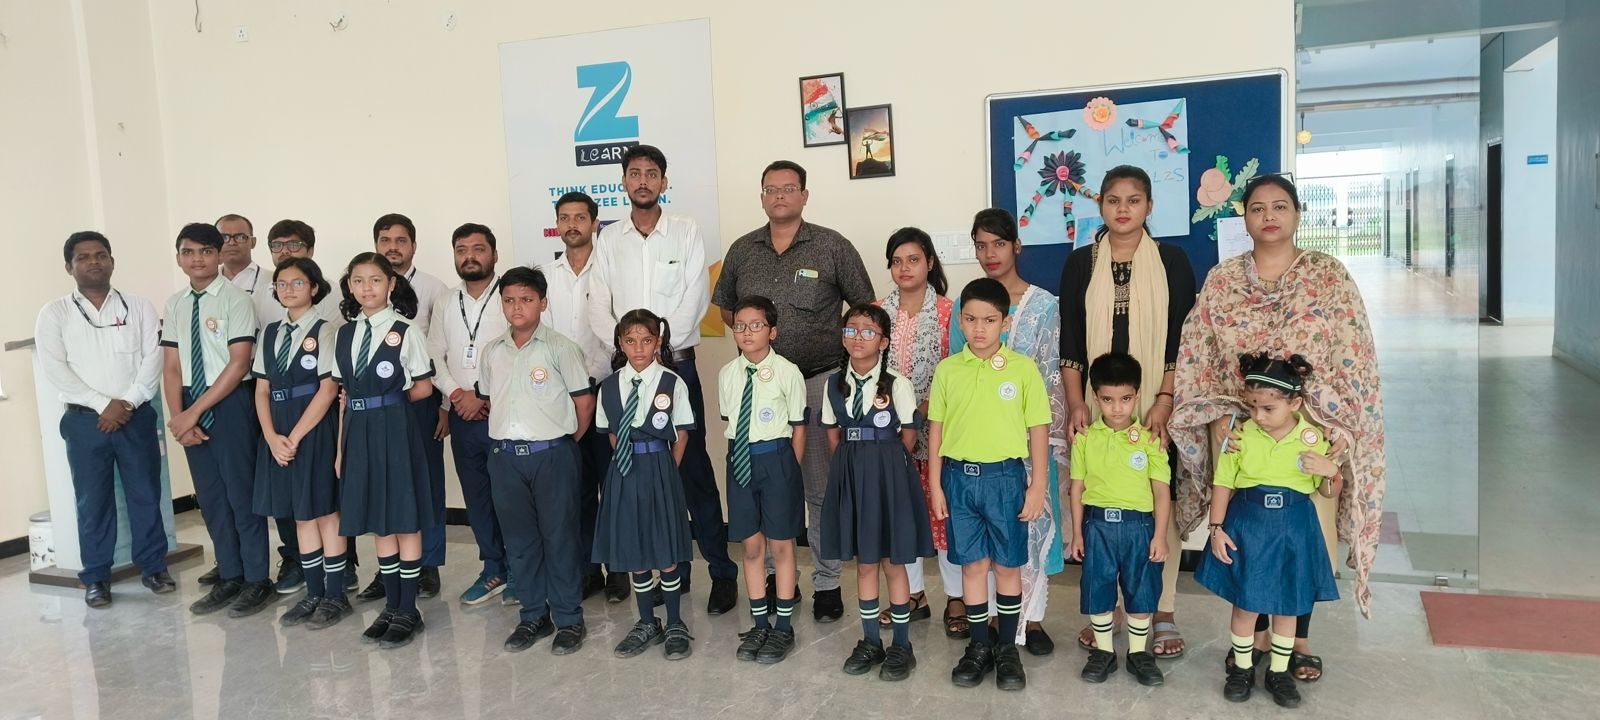 Mount Litera Zee School में परफॉर्मर ऑफ द मंथ में बच्चों का किया गया चयन